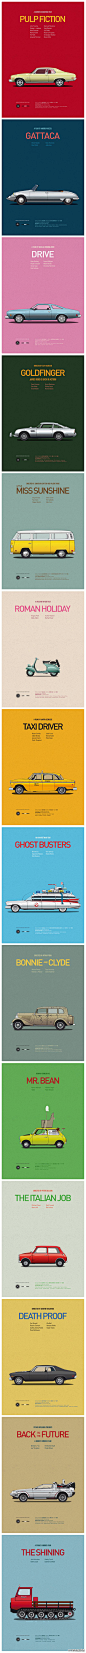 平面设计师Jesús Prudencio创作了这一系列复古车的海报。很有趣 via@杂生活 网